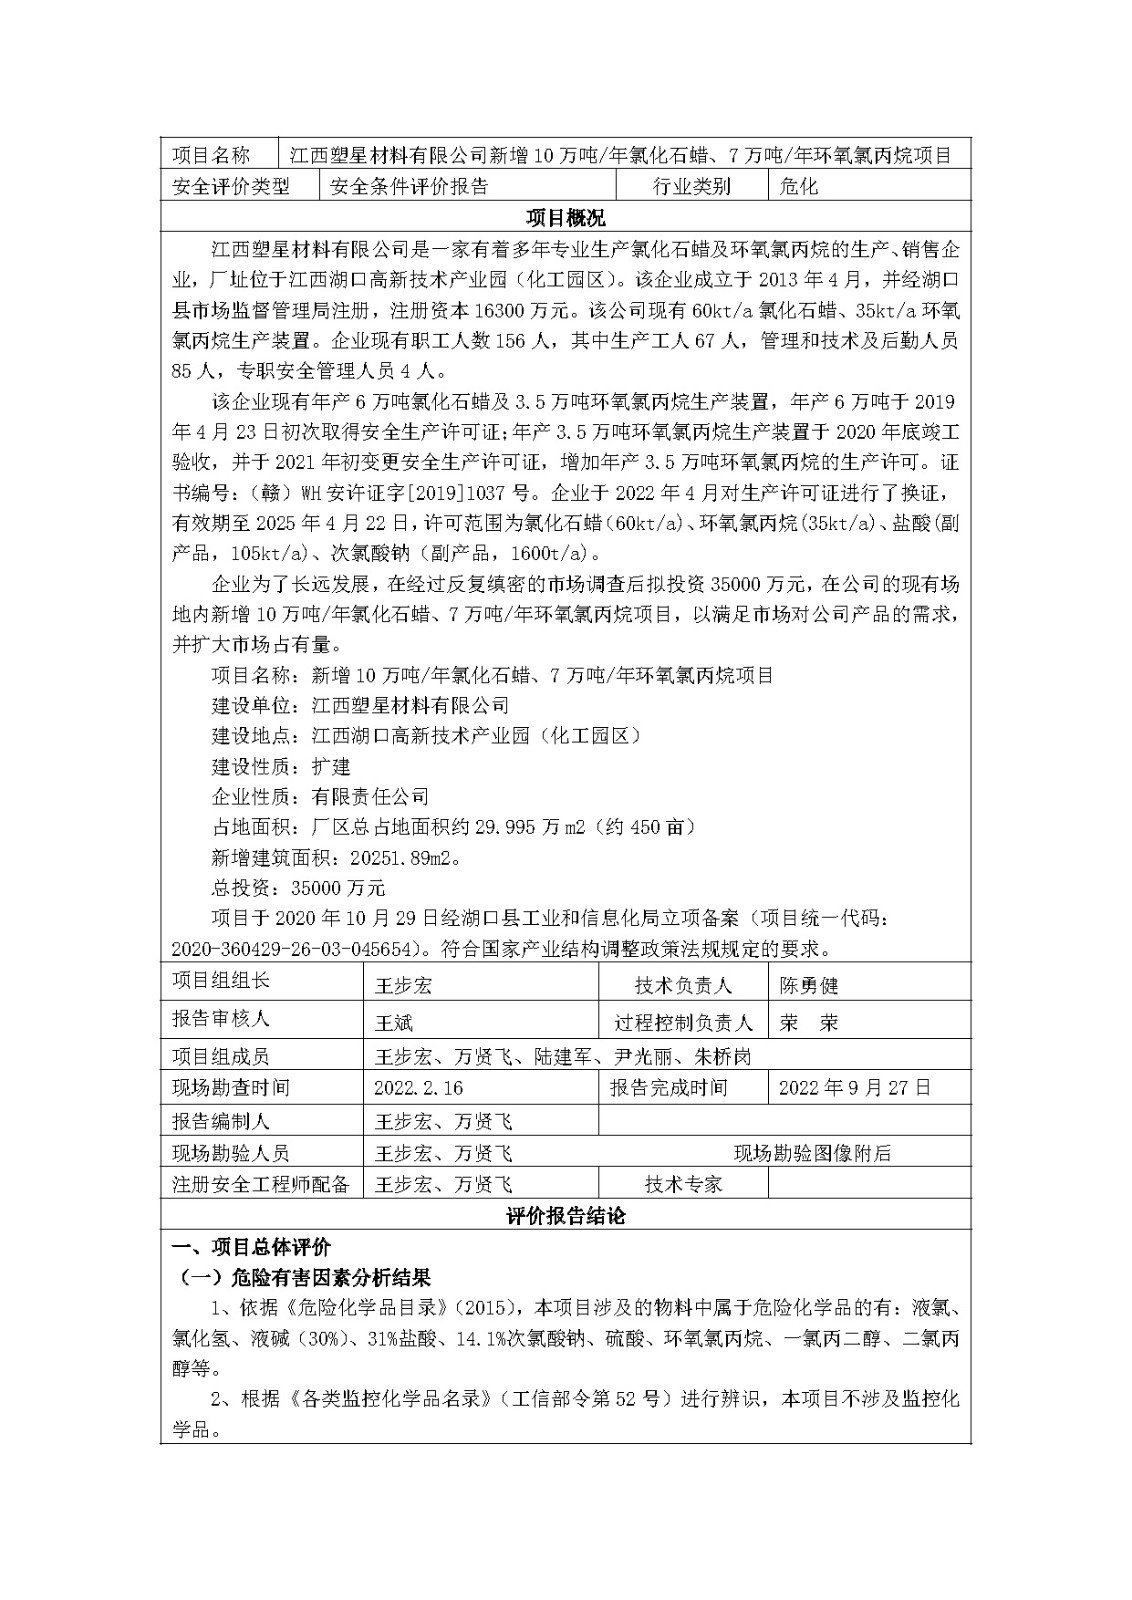 安全评价报告基本信息公开表(江西塑星材料有限公司)11月